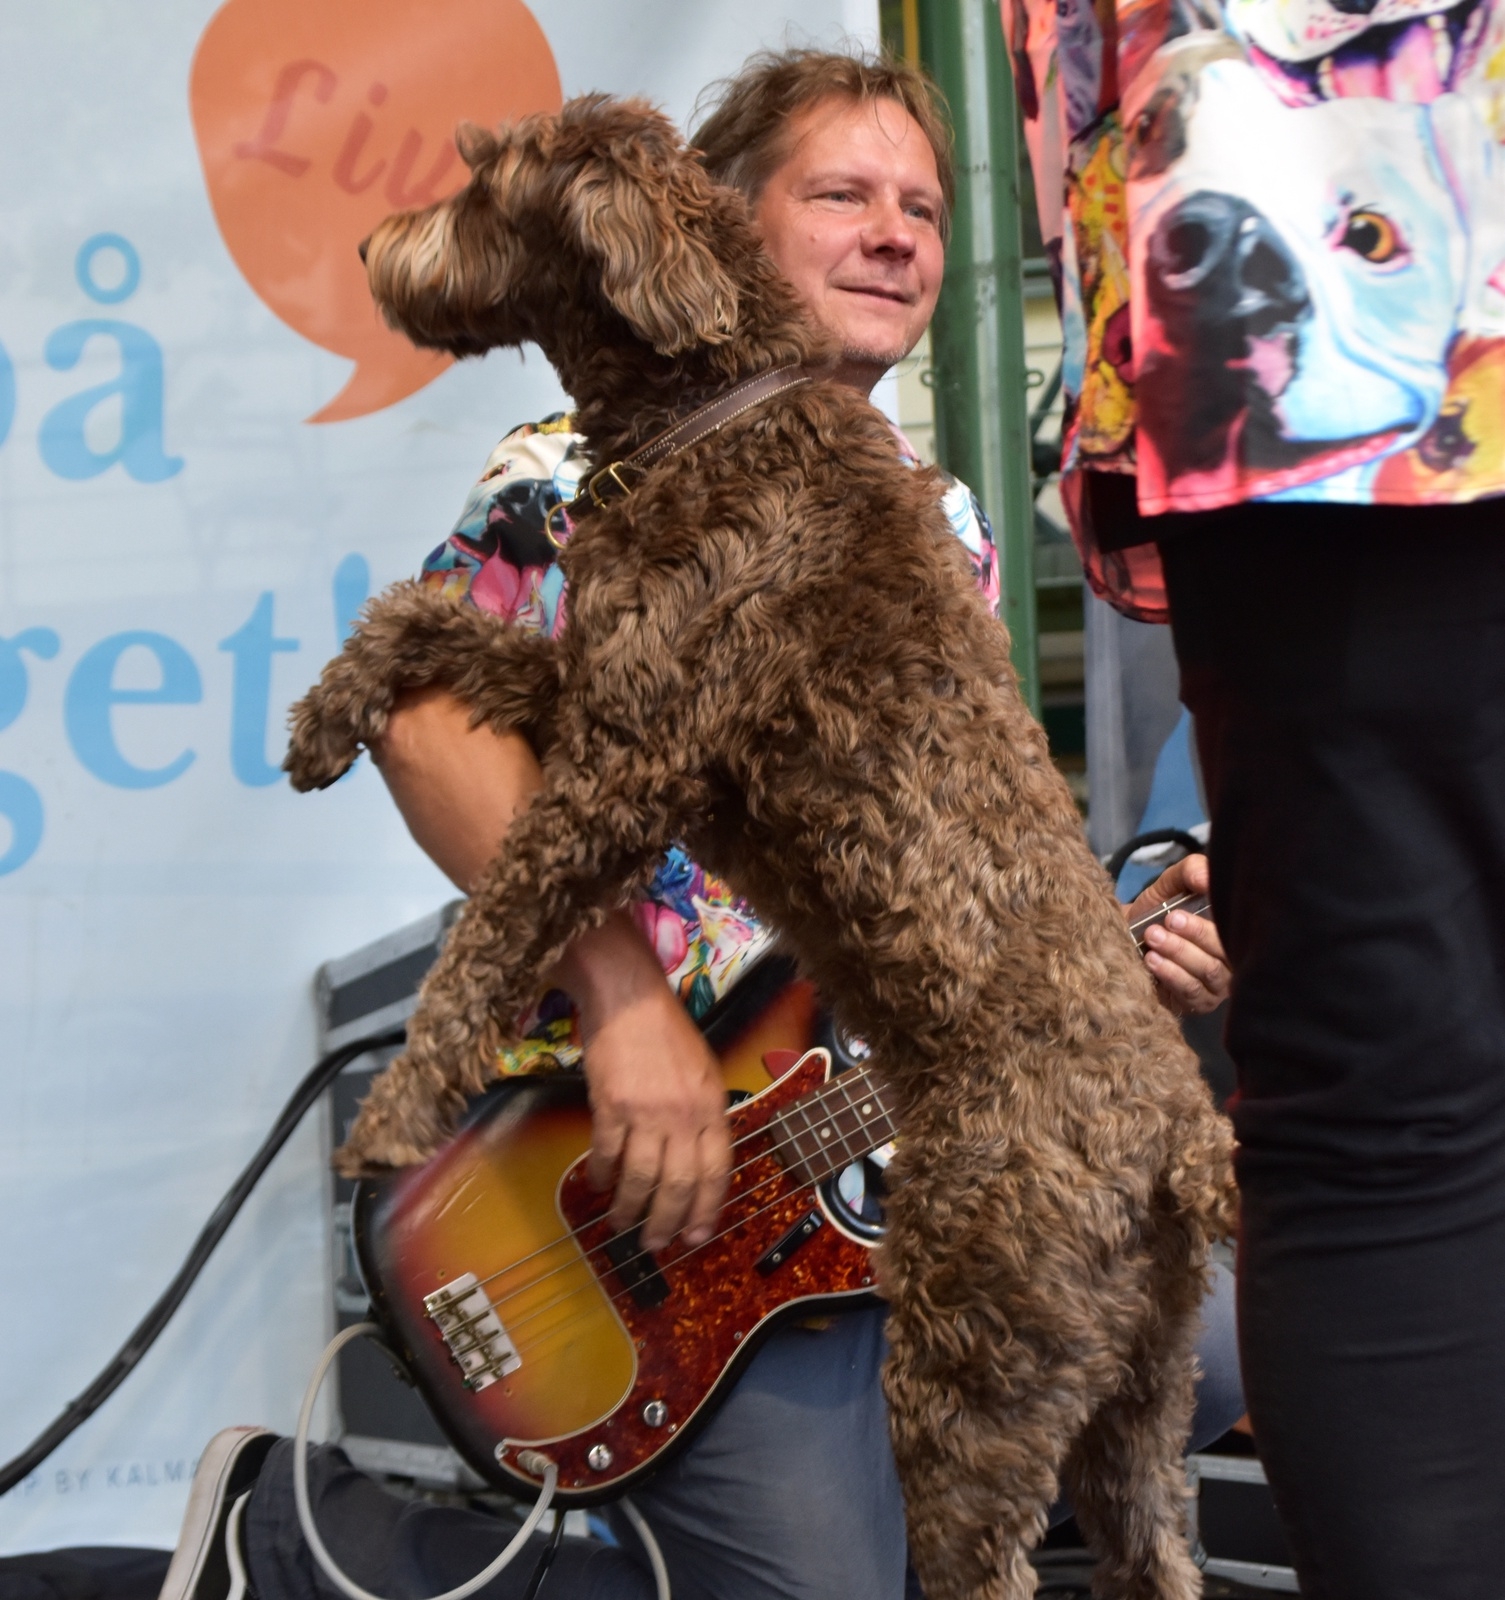 Esther hunden trivdes på scen och hade många fans.